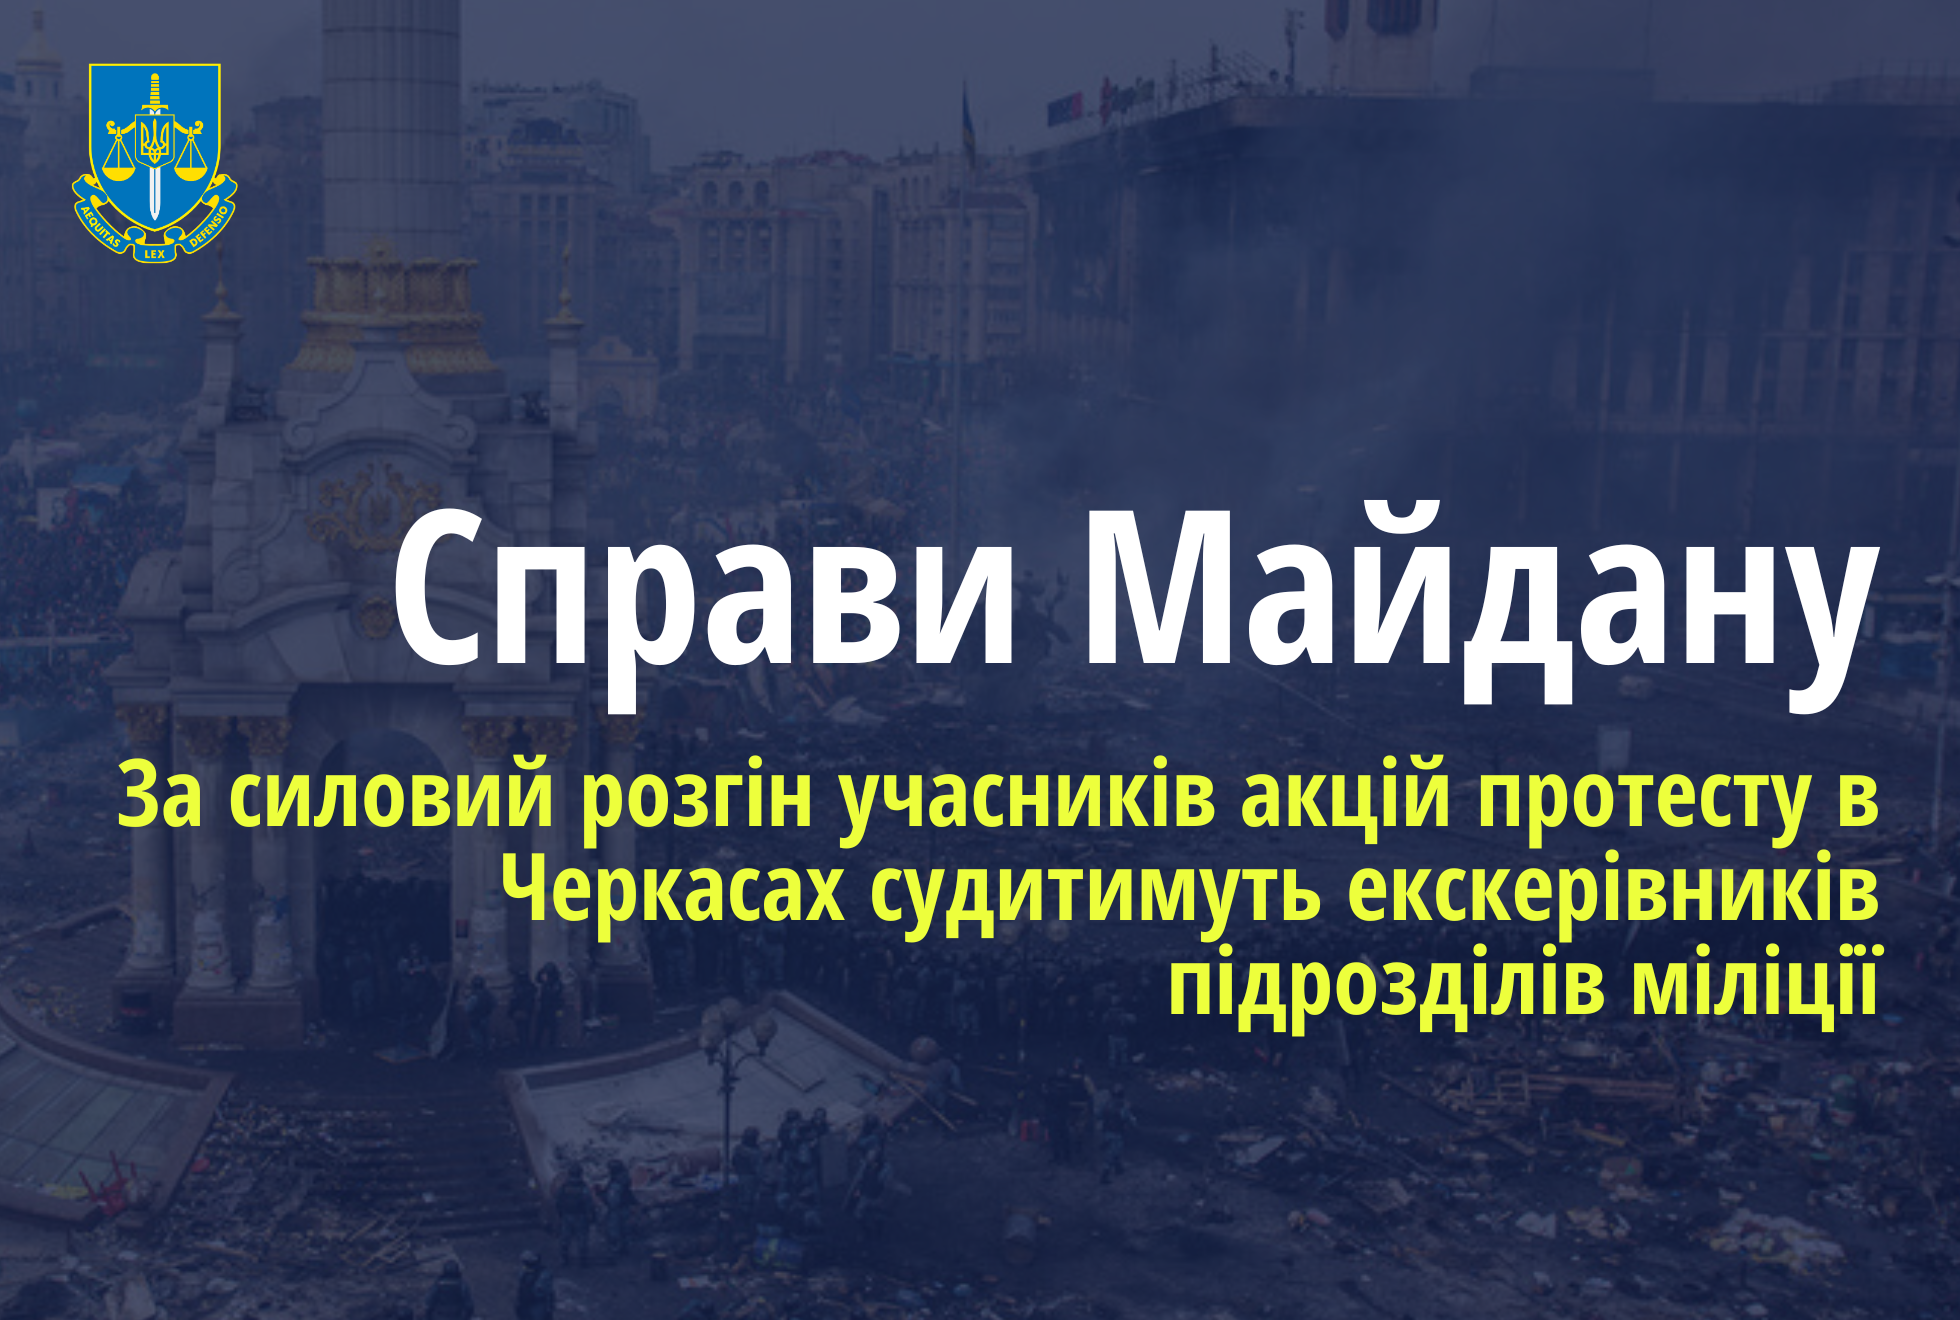 Справи Майдану: За силовий розгін акцій протесту в Черкасах судитимуть чотирьох екскерівників підрозділів міліції